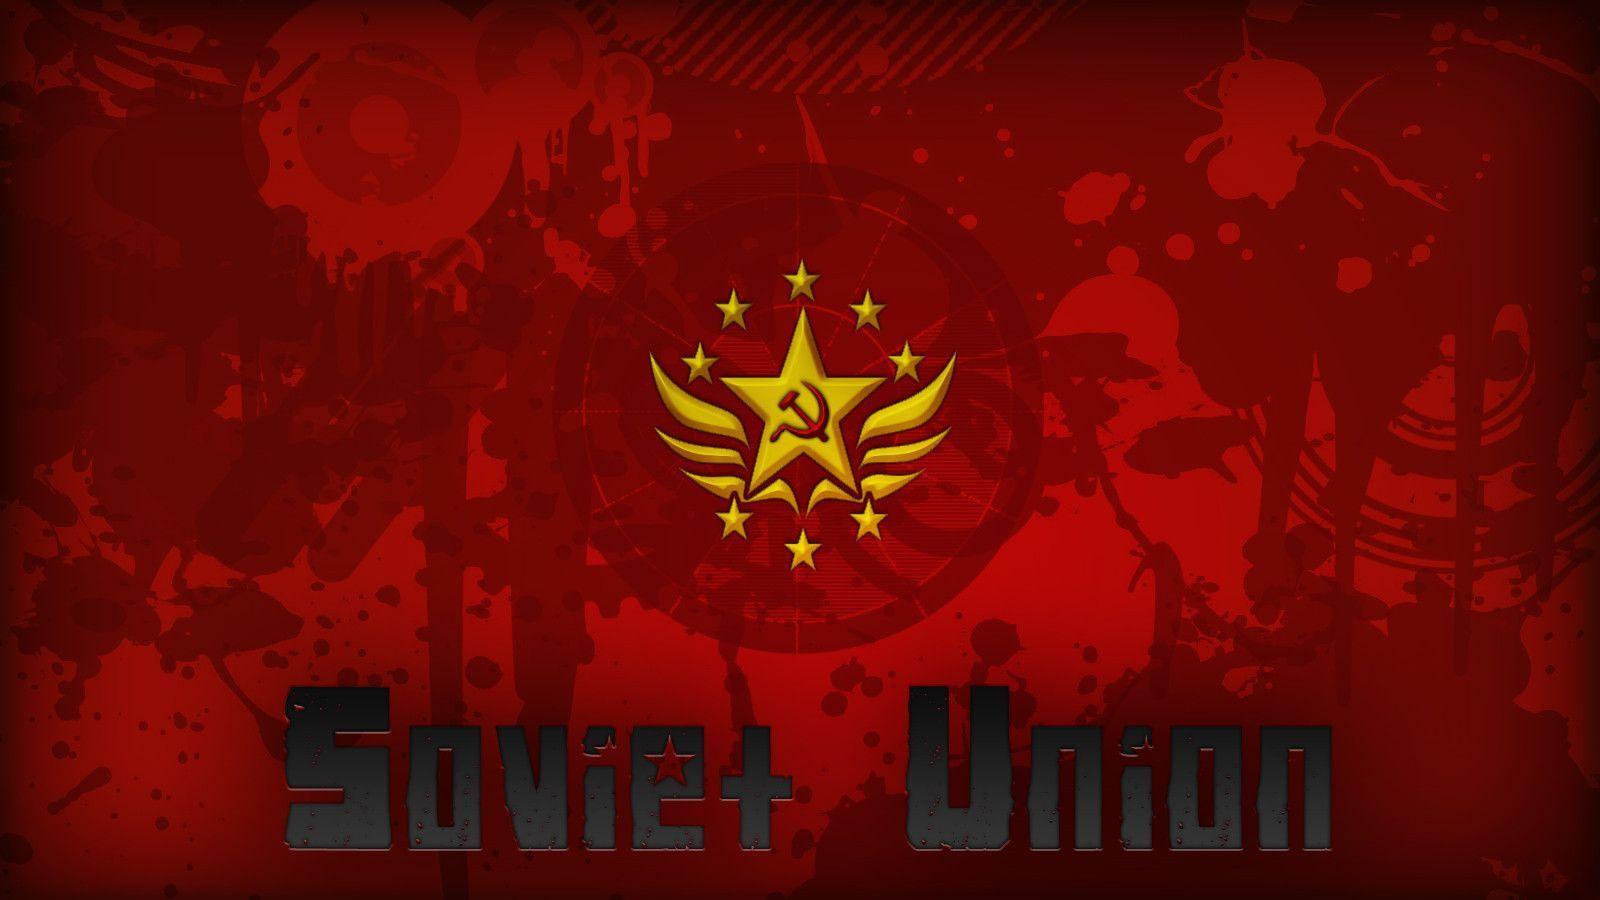 Soviet Union Propaganda Wallpaper